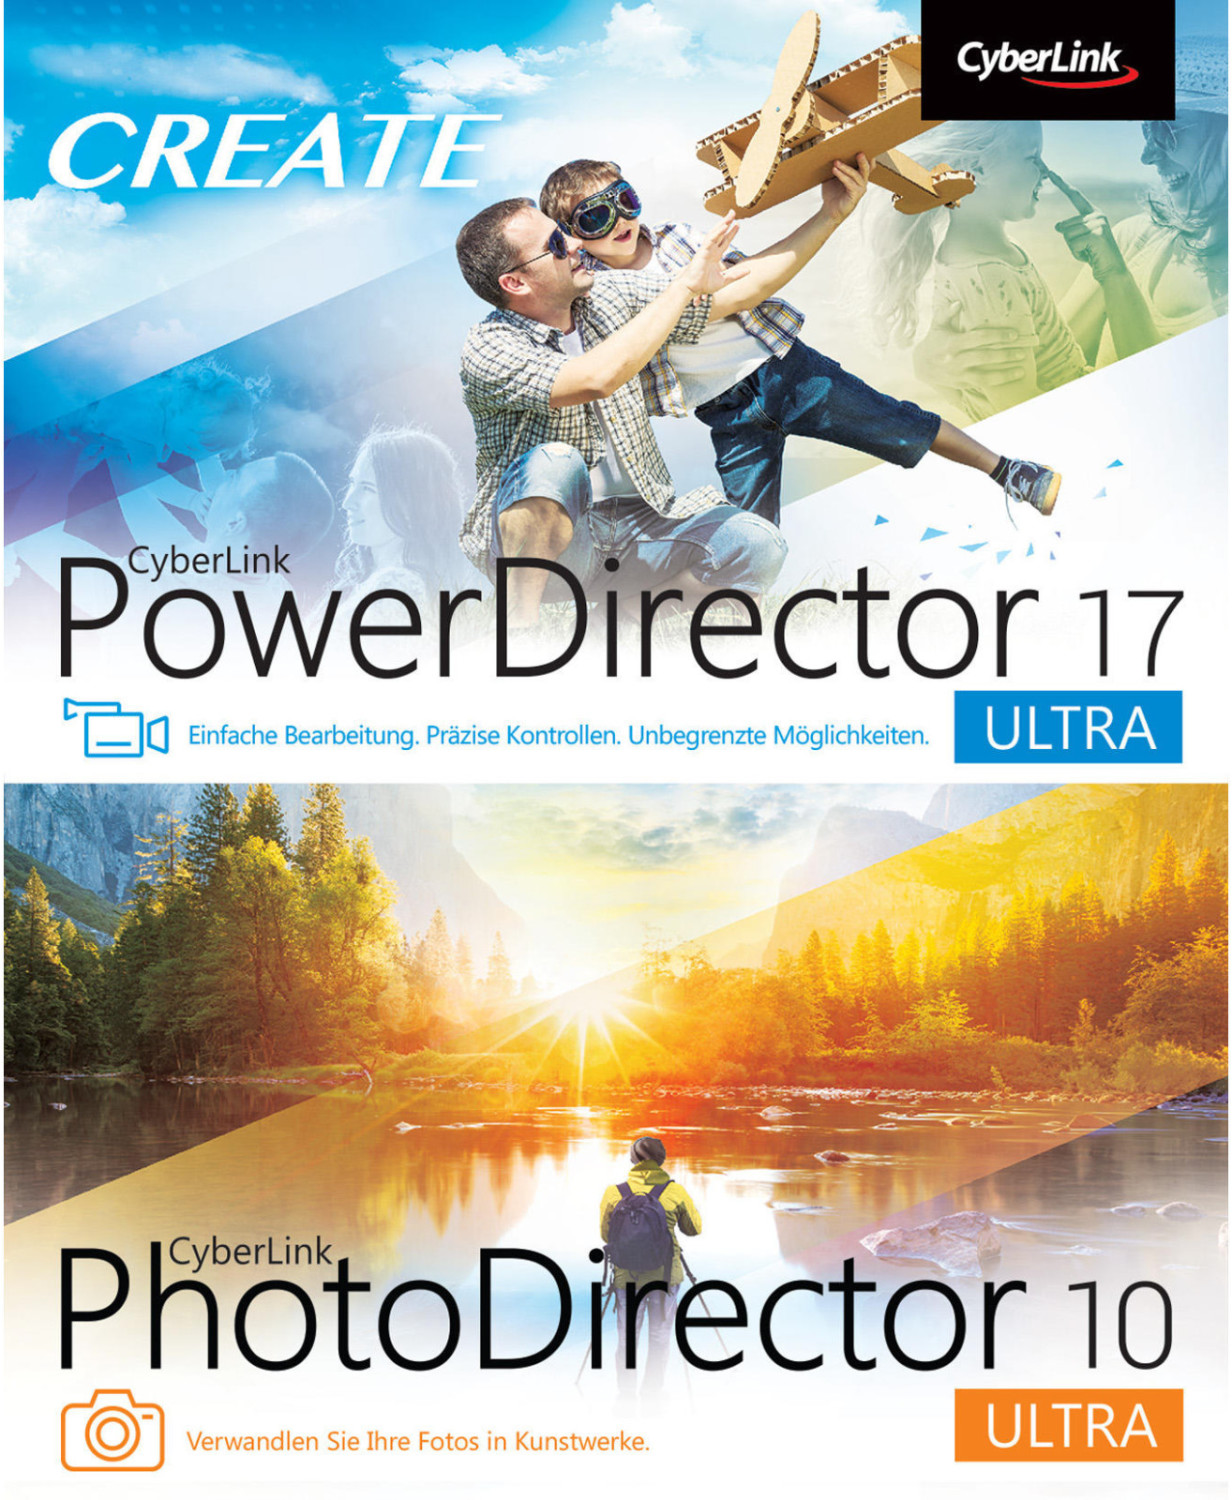 cyberlink powerdirector 19 and photodirector 12 ultra